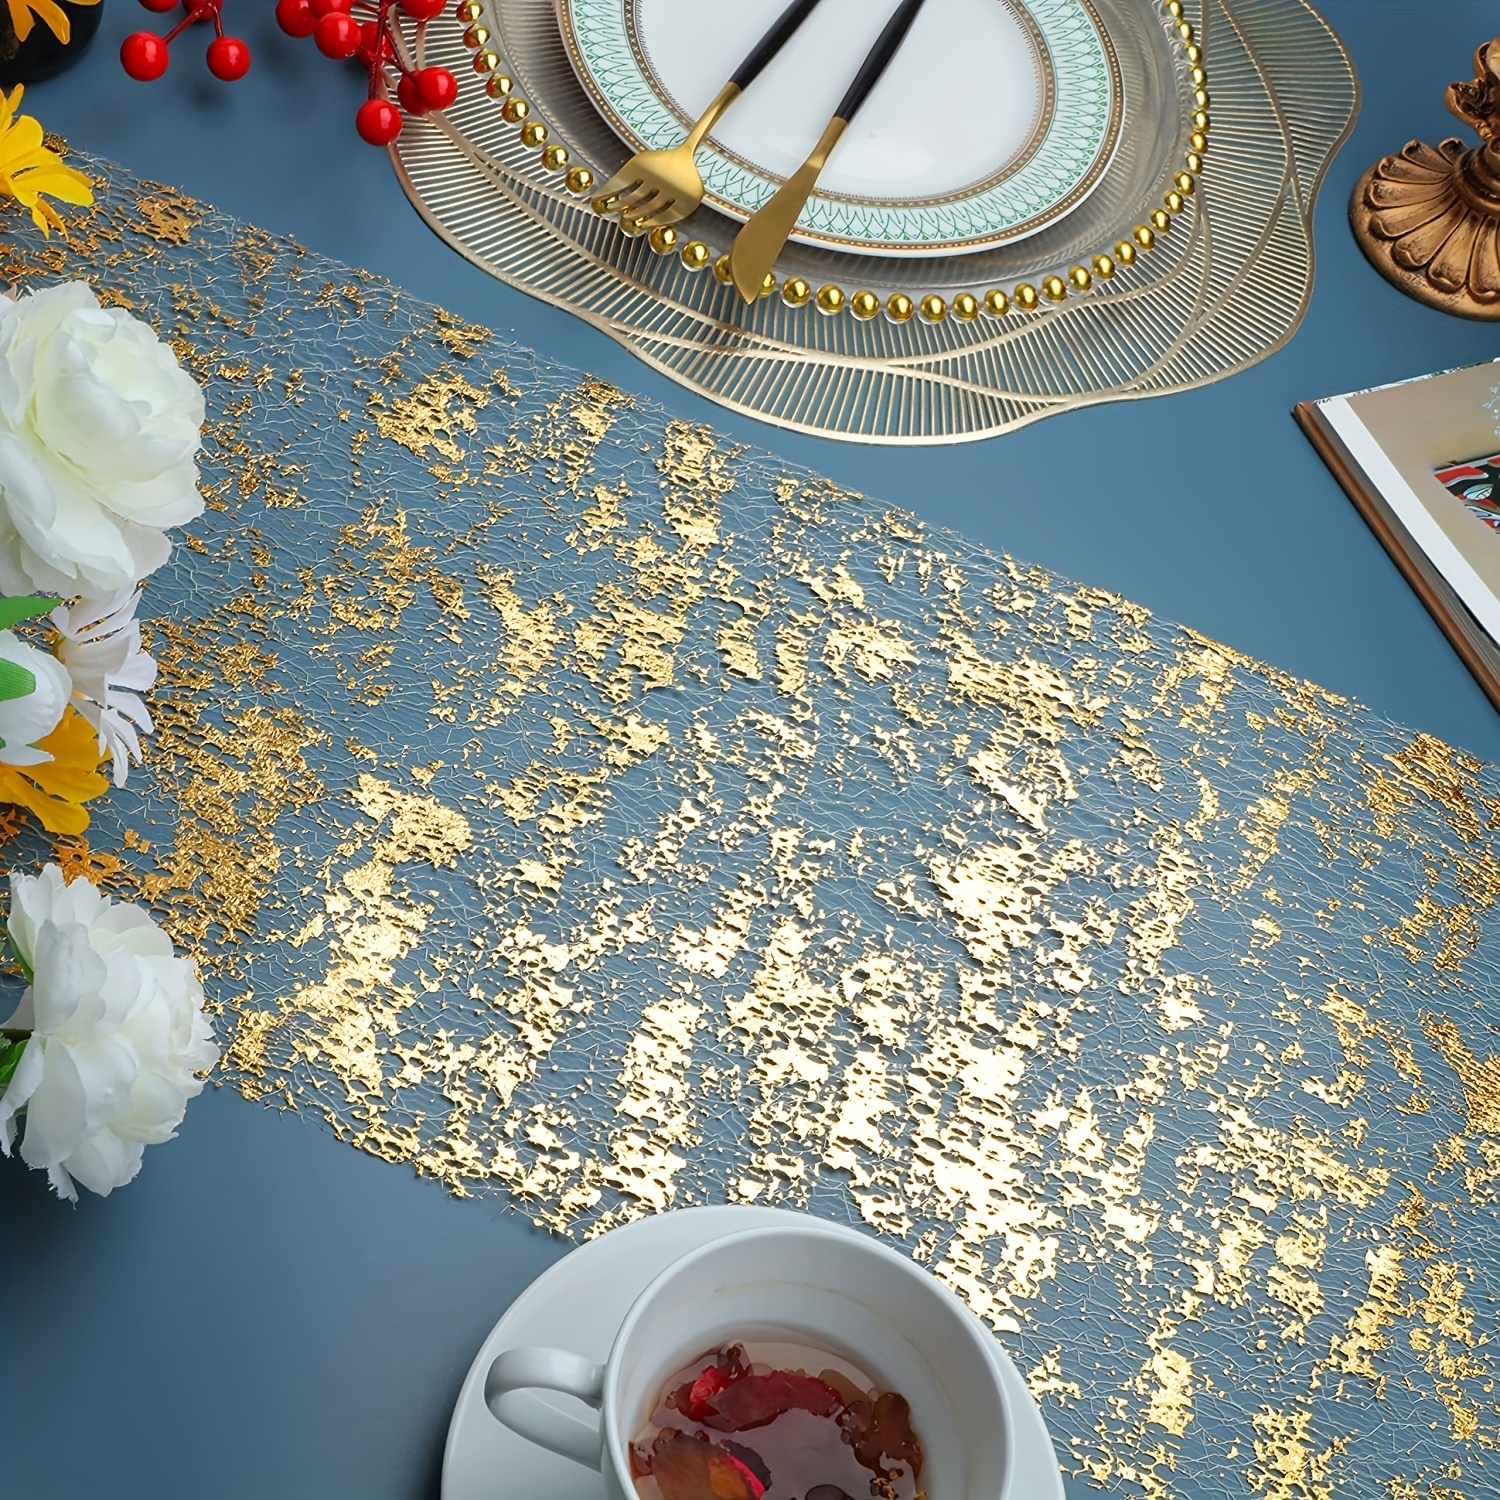 1 pièce Décorations de table pour fête, chemin de table doré, rouleau de  chemin de table en maille fine métallique dorée à paillettes, décoration de